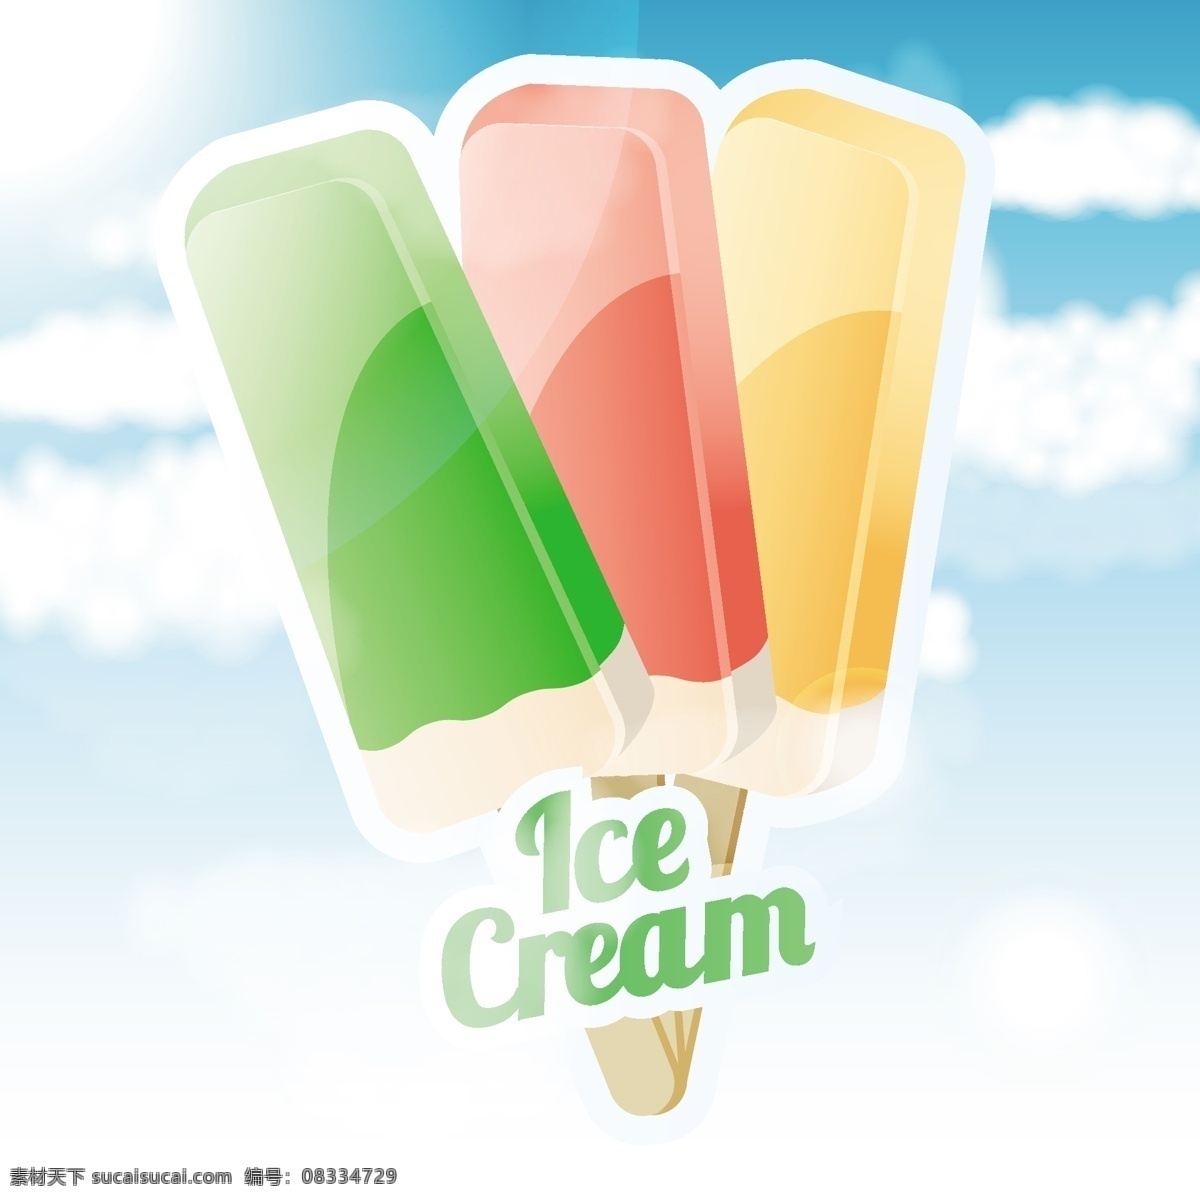 甜蜜 冰淇淋 矢量 冰棒 可爱的 矢量素材 甜点 夏天 新鲜的 冰冷的 矢量图 矢量人物